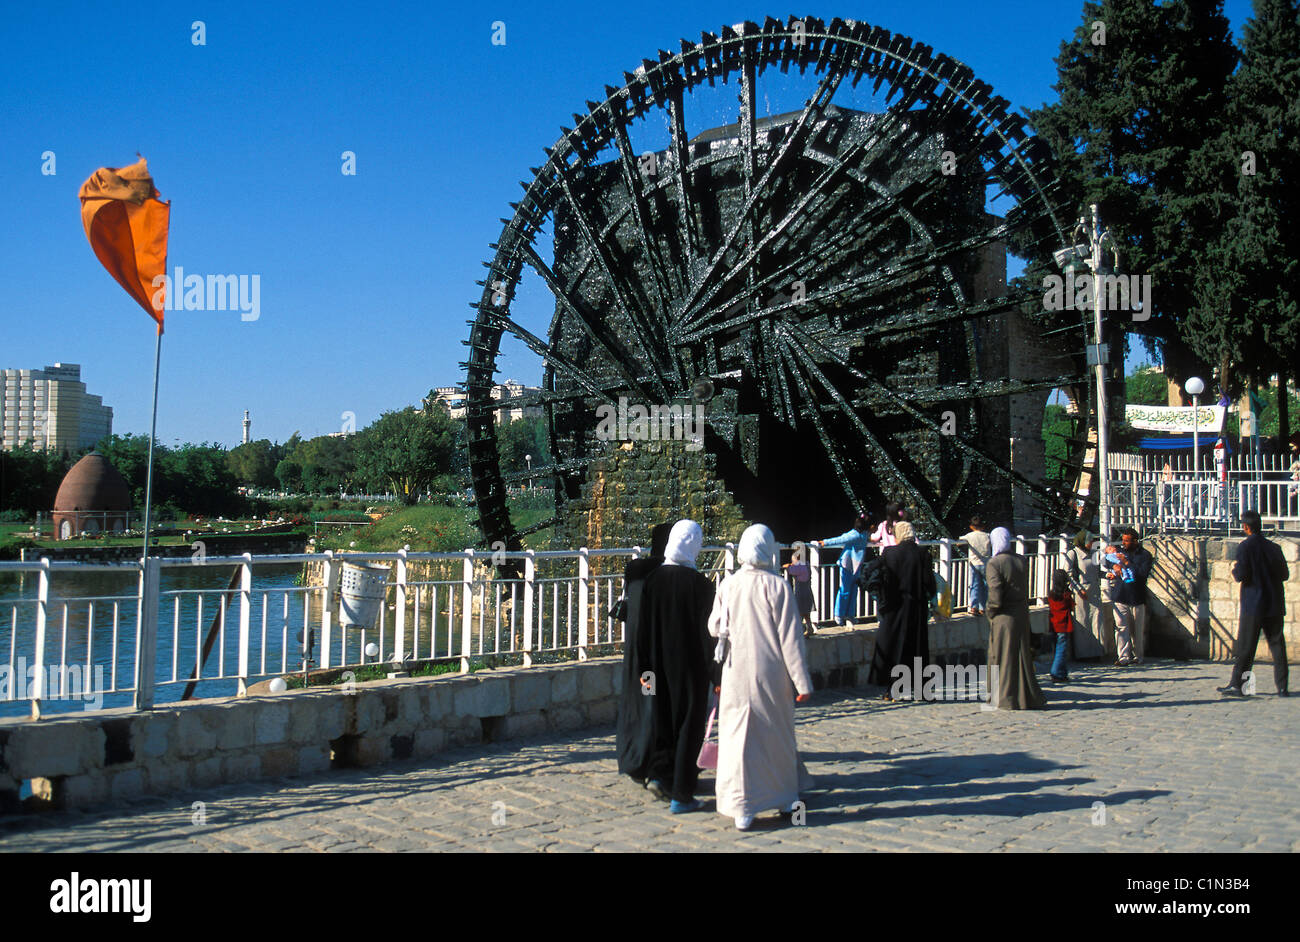 La Syrie, Hama, noria (ancienne machine hydraulique) sur le fleuve Oronte Banque D'Images